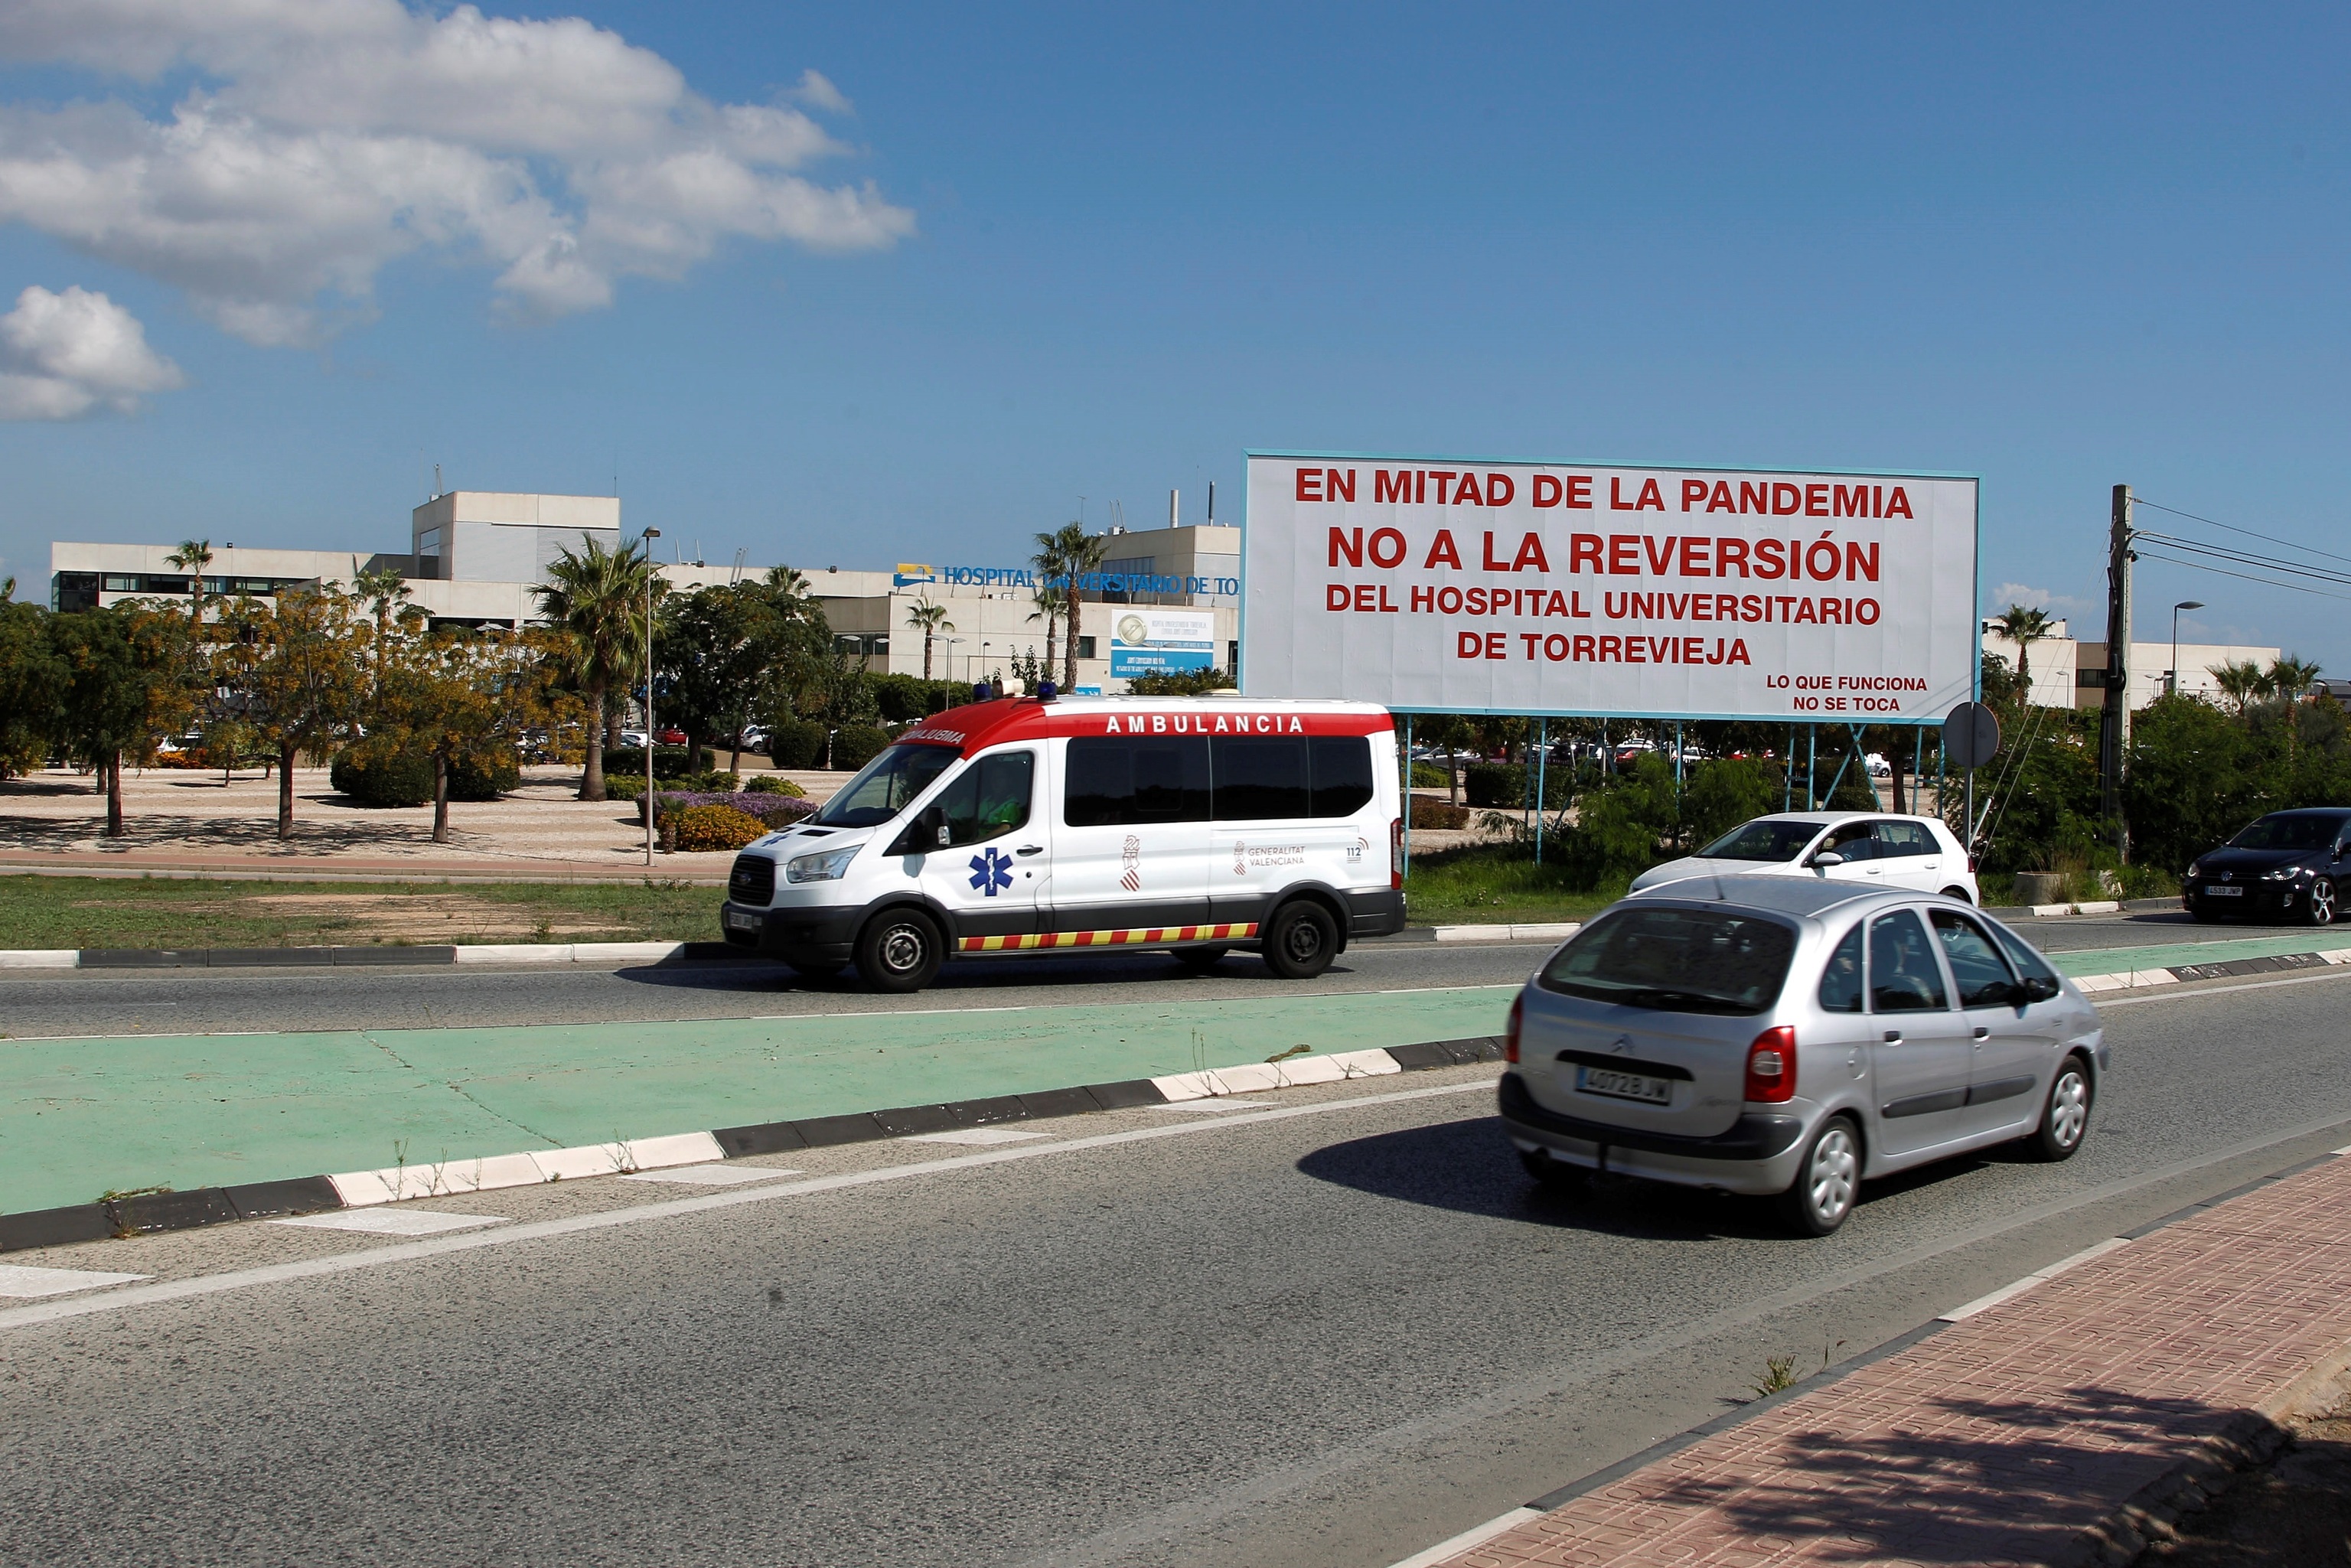 Vallas publicitarias en protesta por la reversión de Torrevieja.